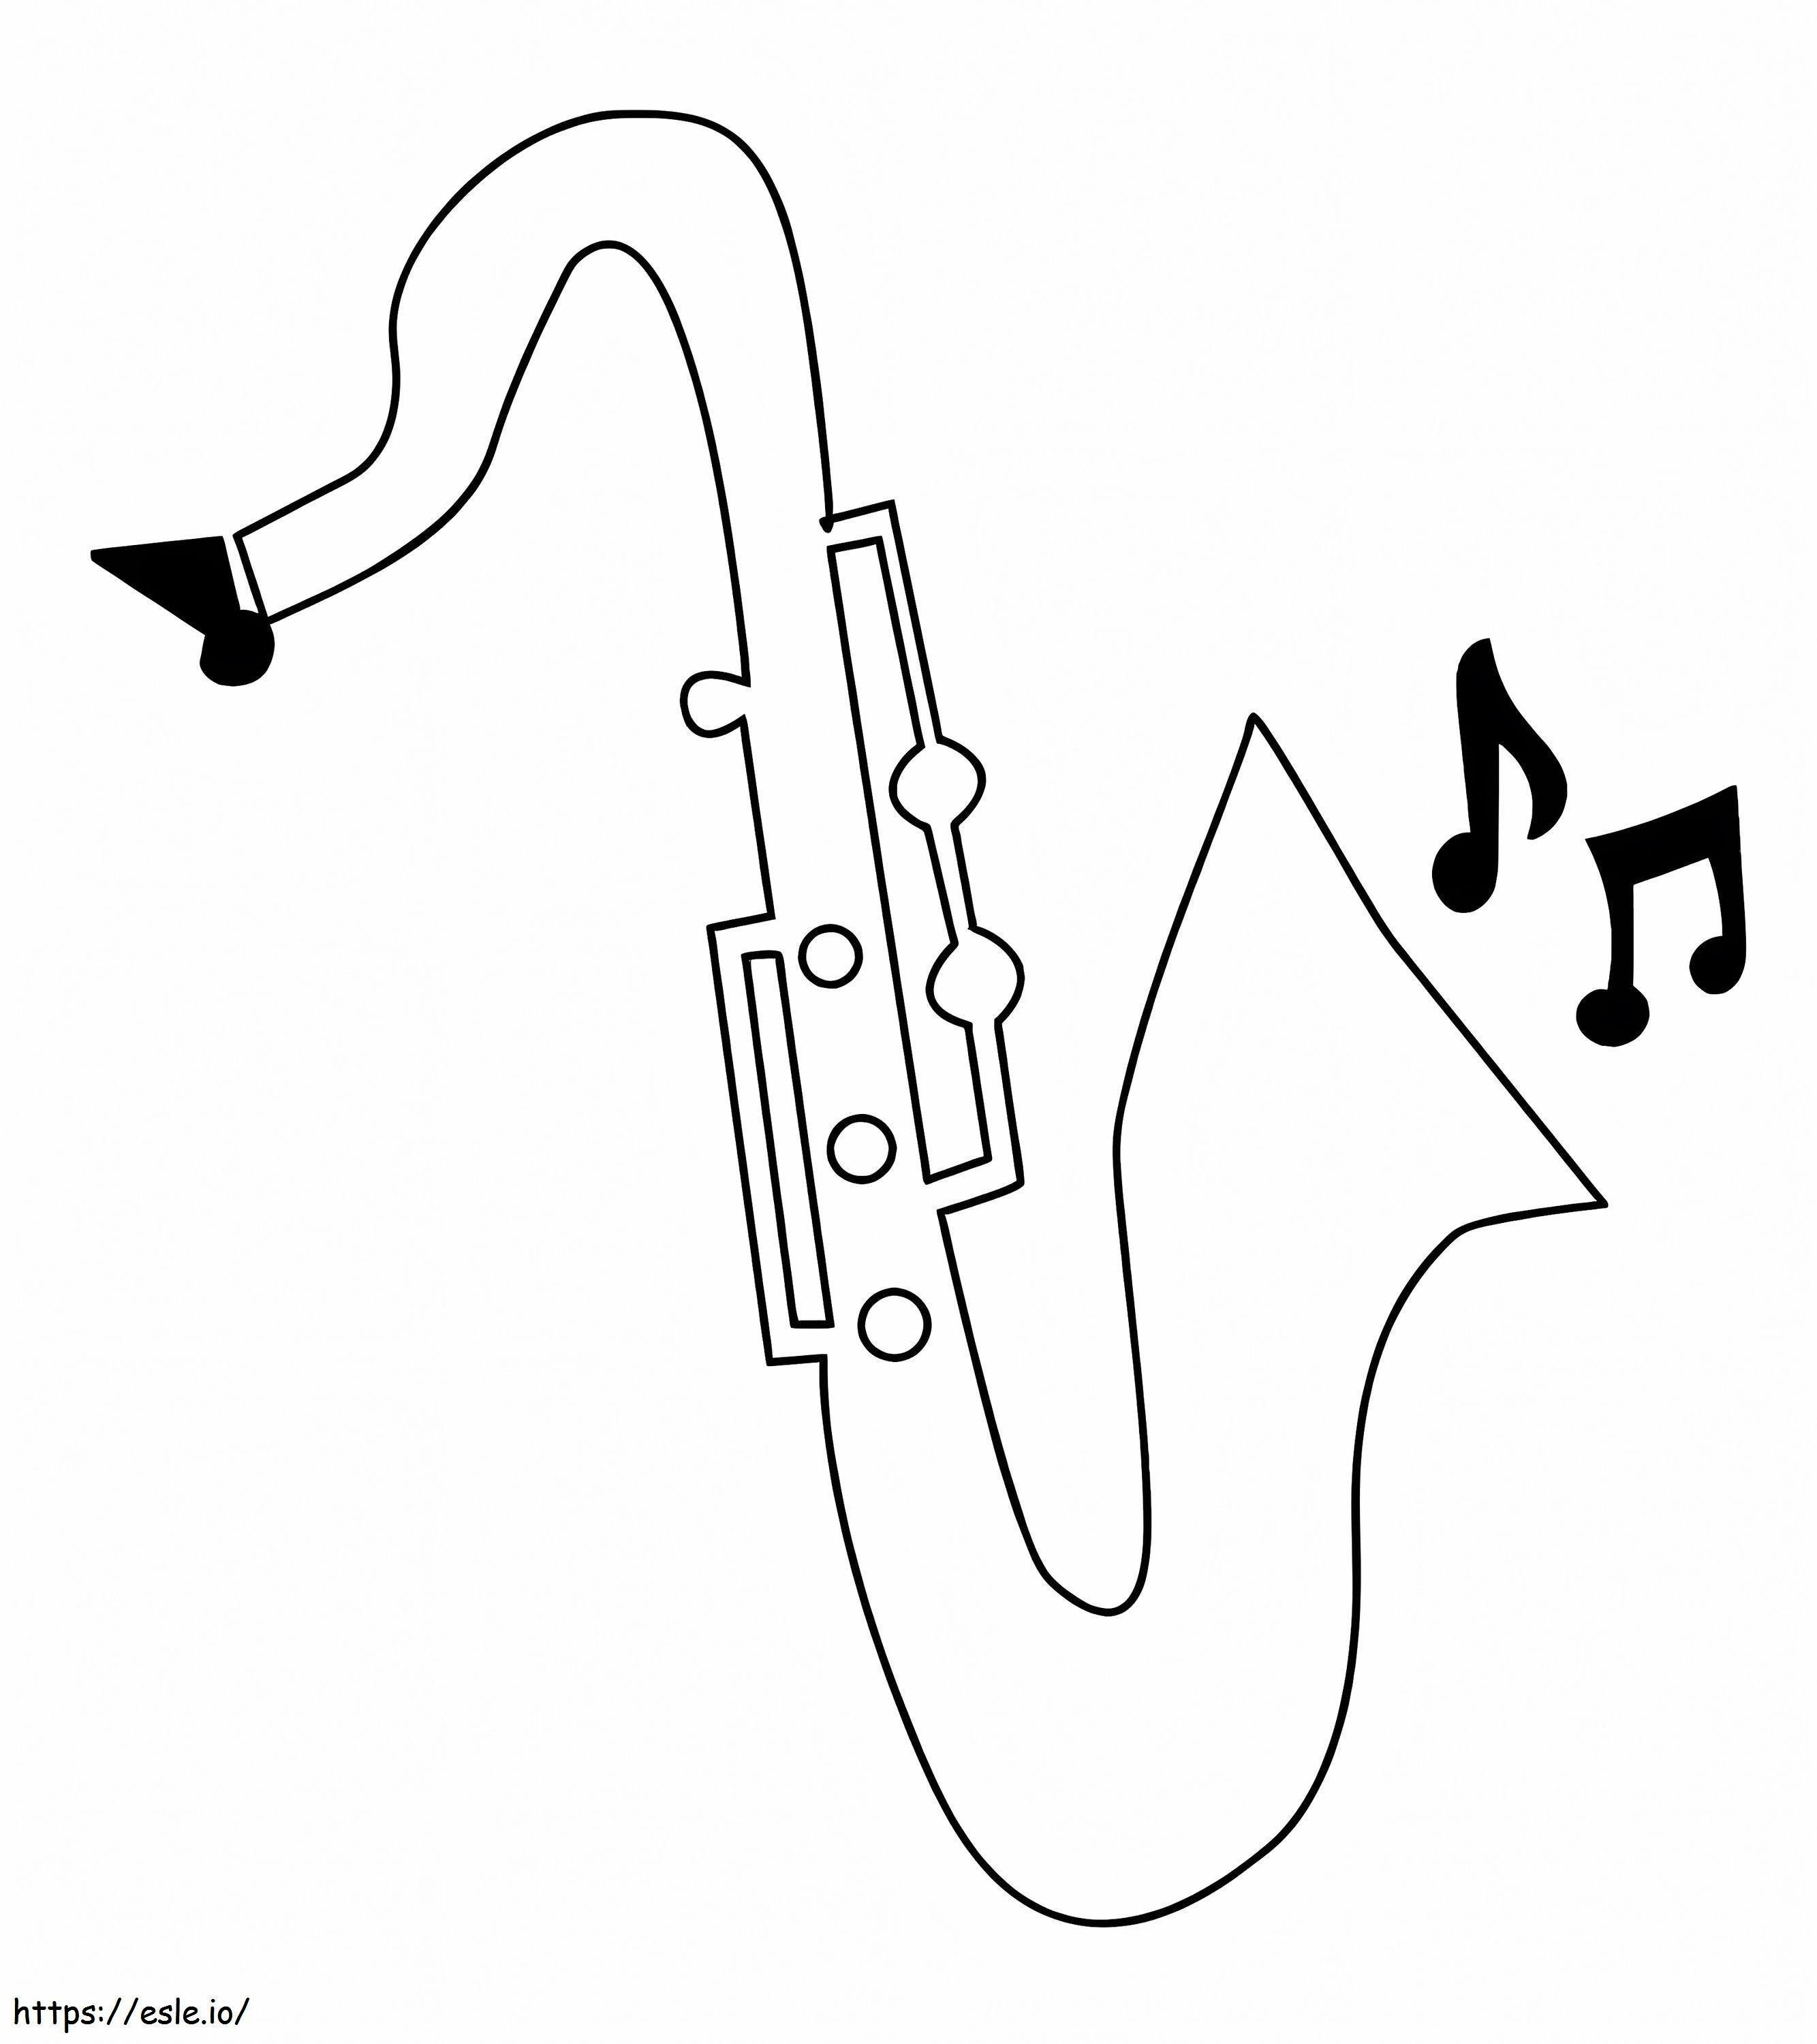 Música Sencilla De Saxofón para colorear